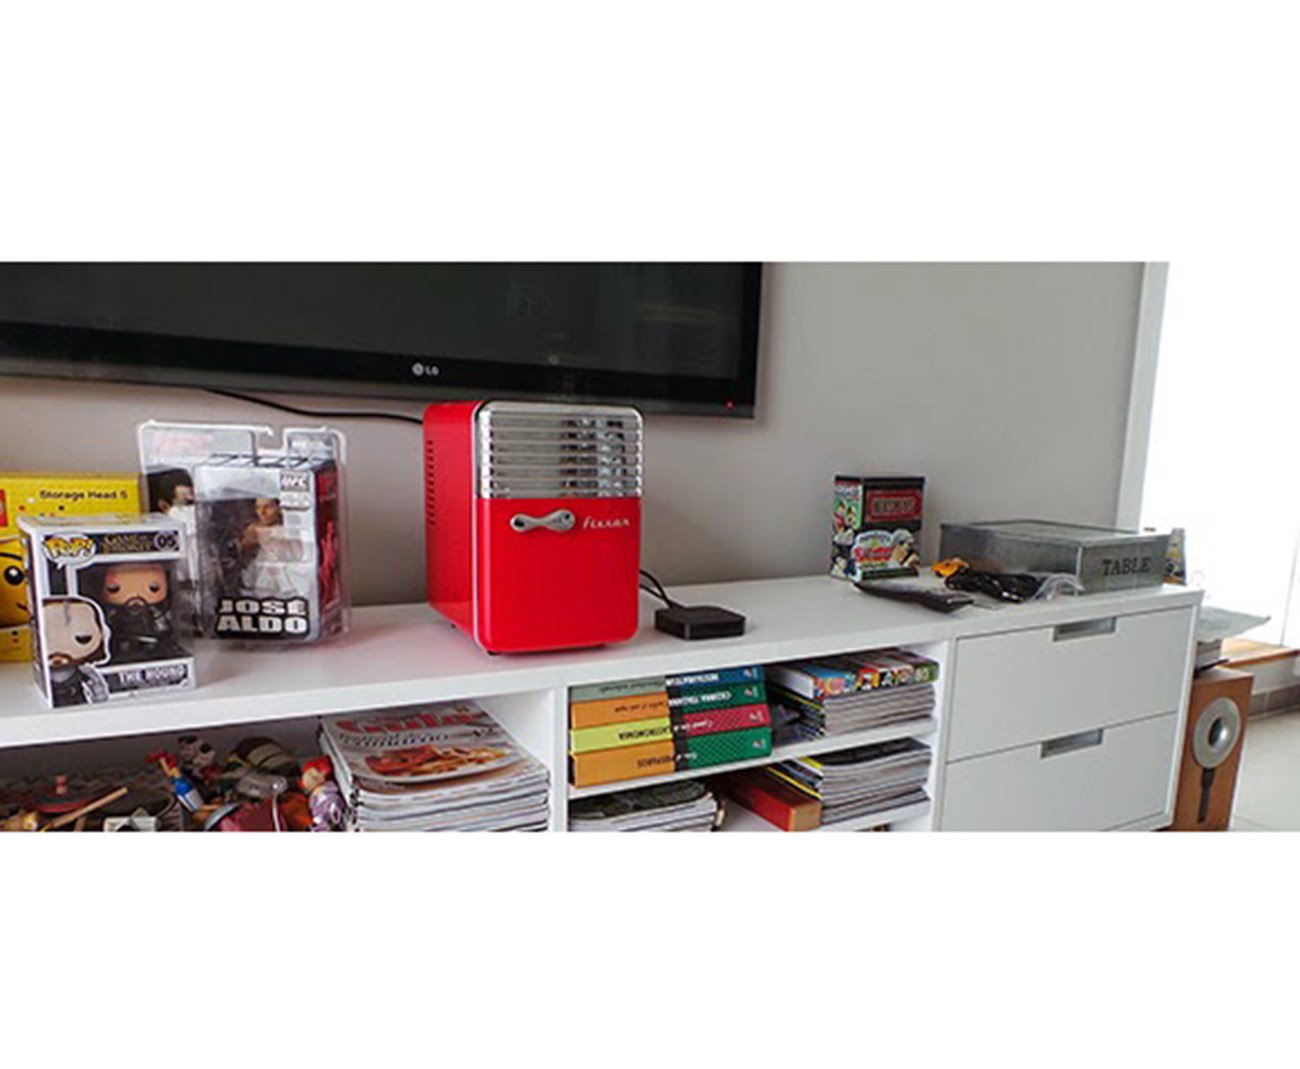 Mini Refrigerador E Aquecedor 5l Vermelha - Fixxar